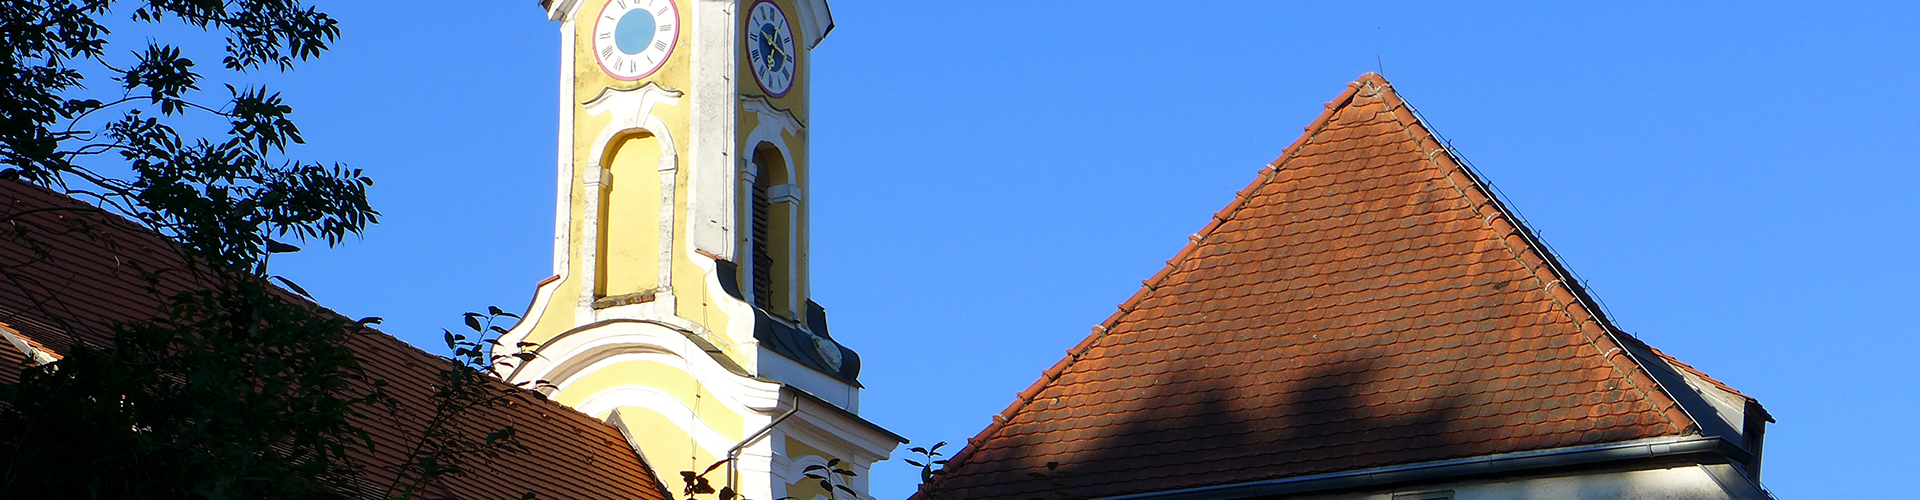 Blick auf den Turm der Schloßkirche Neufraunhofen